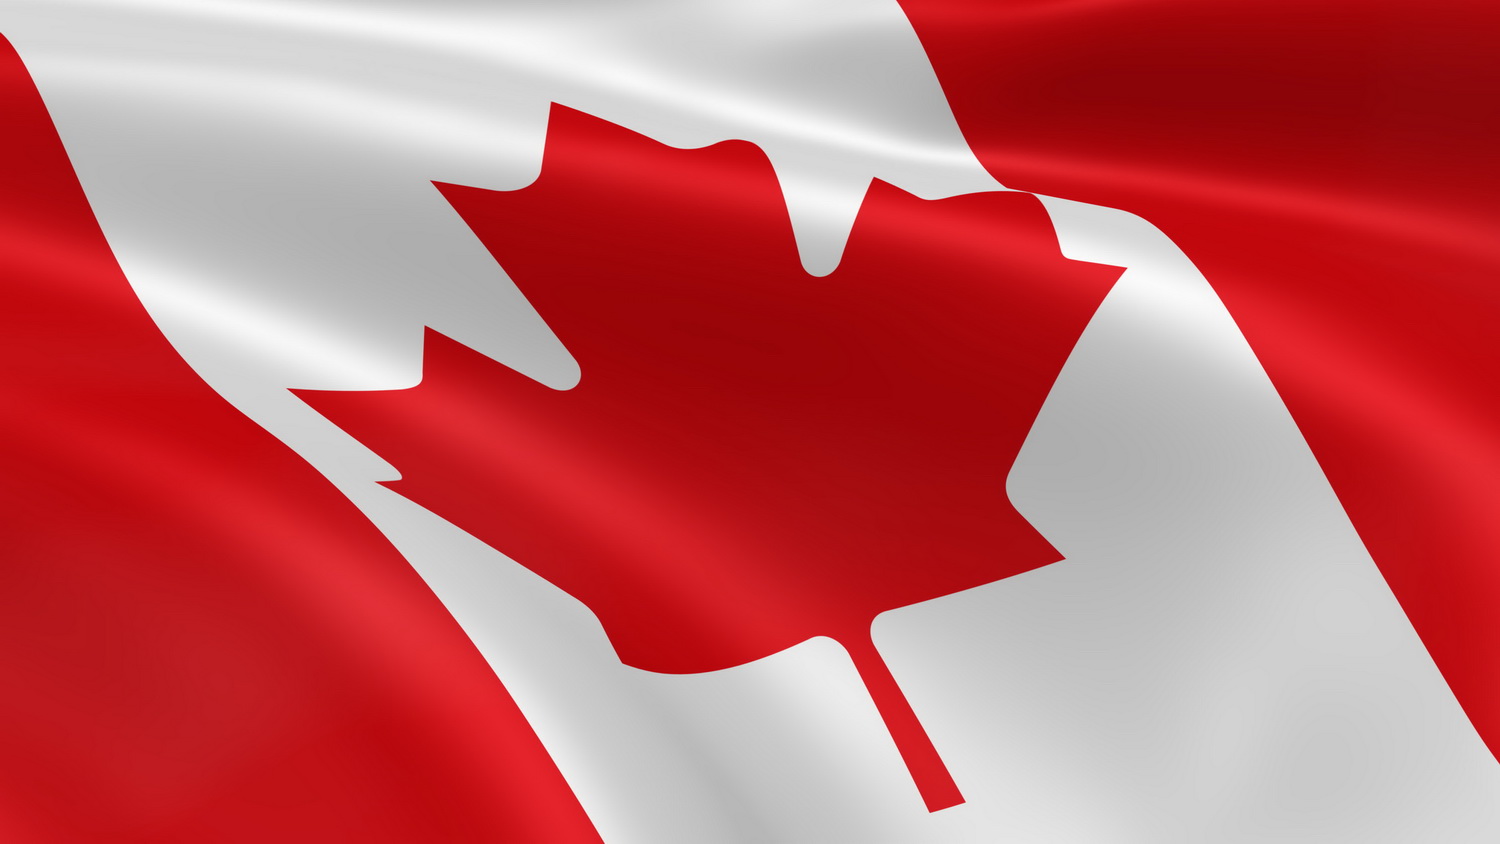 Canada_flag